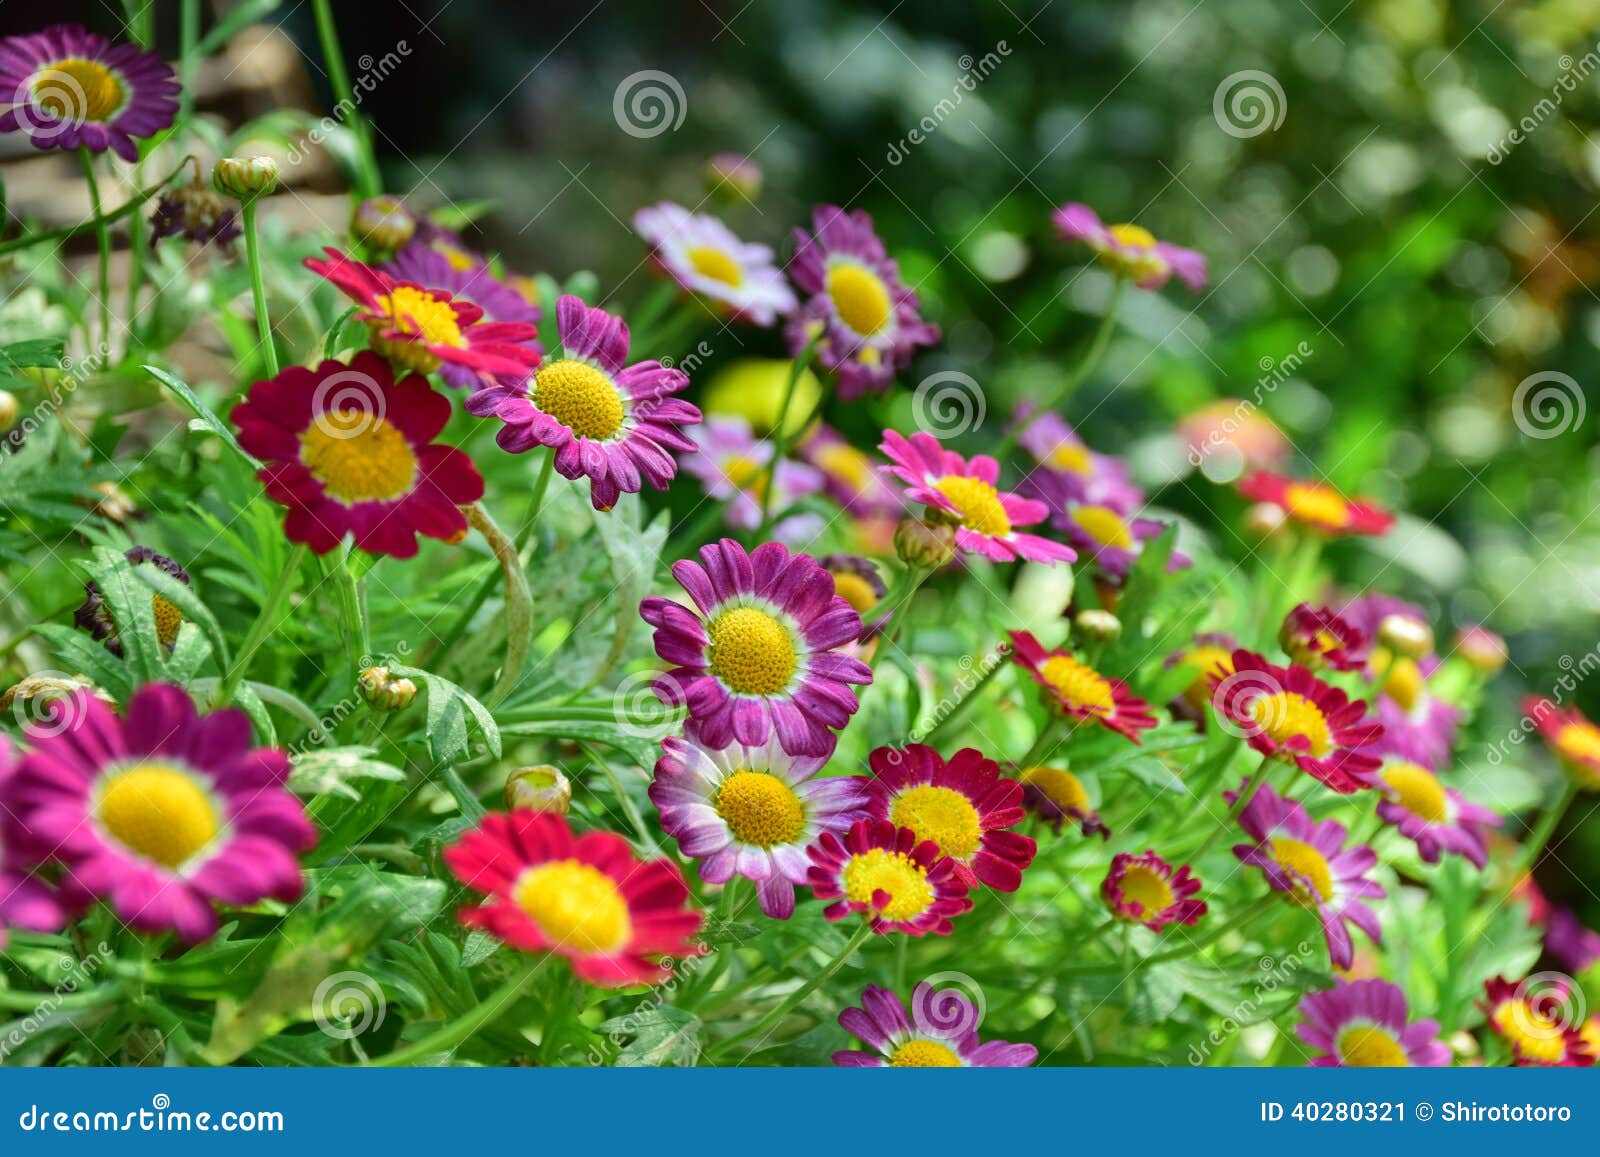 Flor pequena colorida imagem de stock. Imagem de floral - 40280321